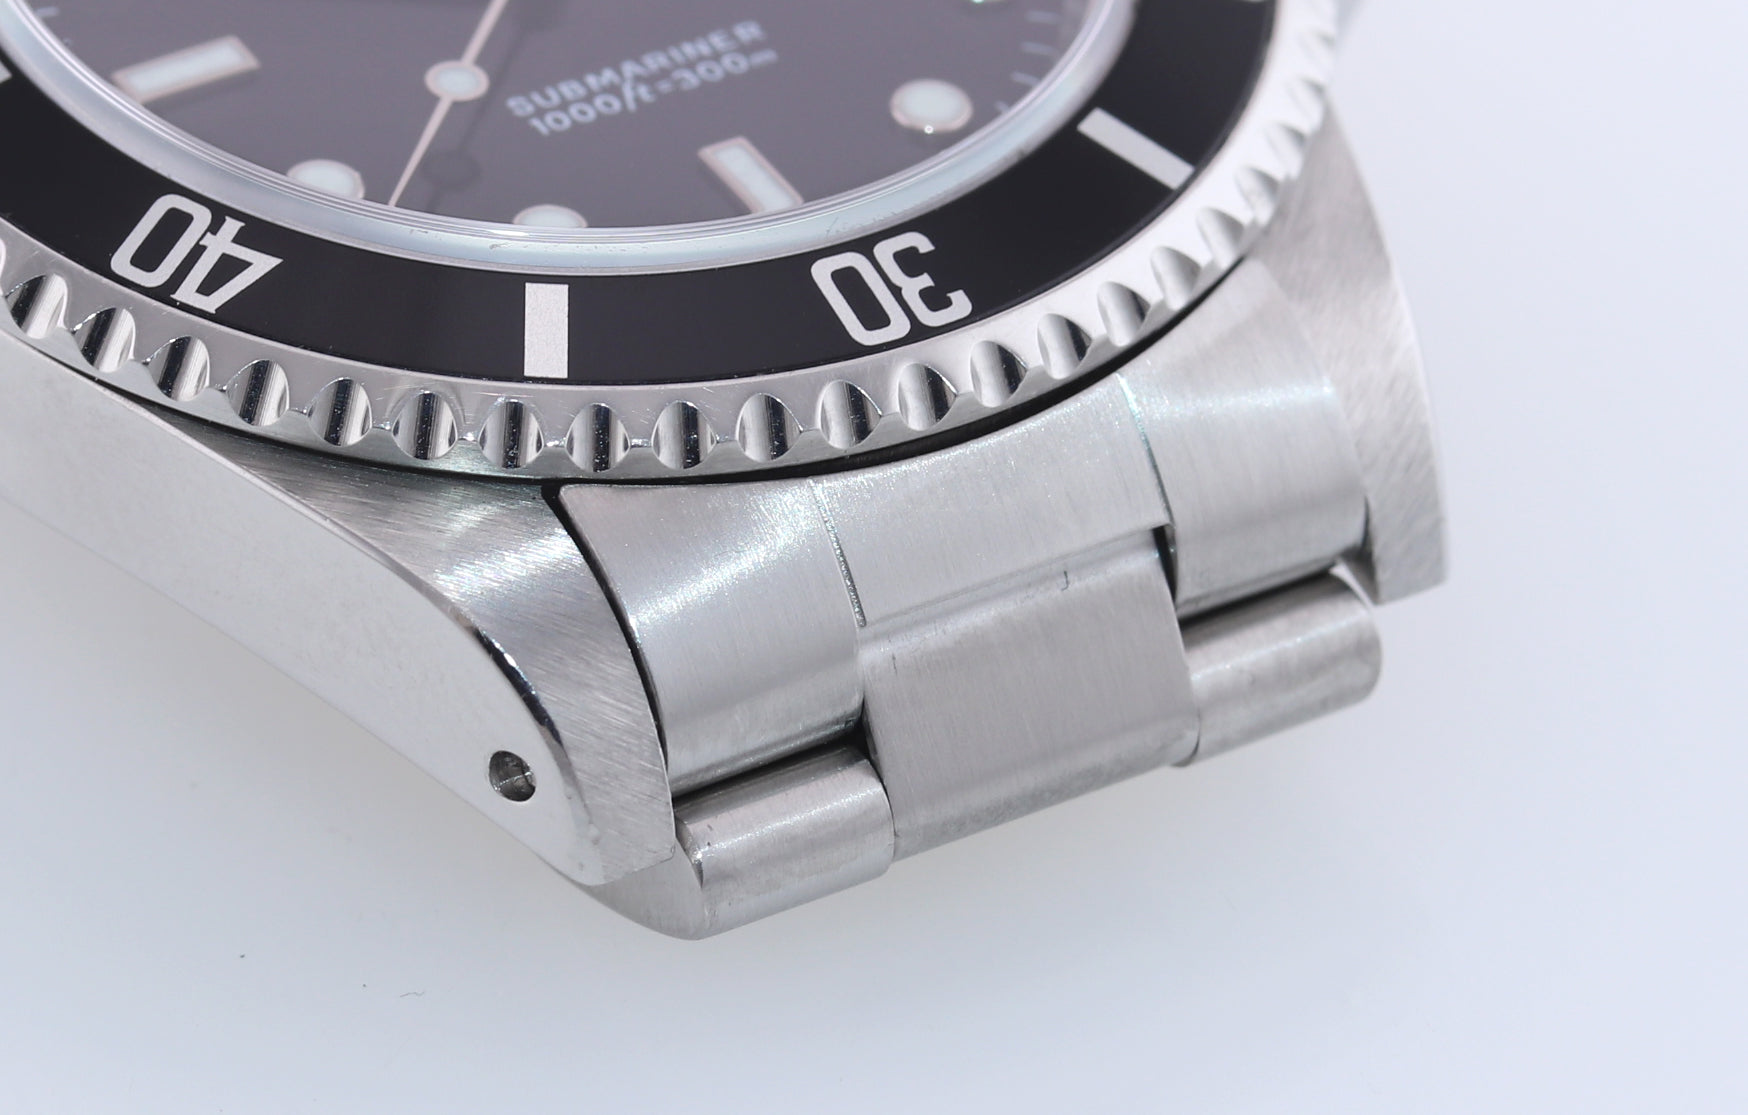 UNPOLISHED Rolex Submariner Black No-Date 14060 Steel 40mm Dive Watch